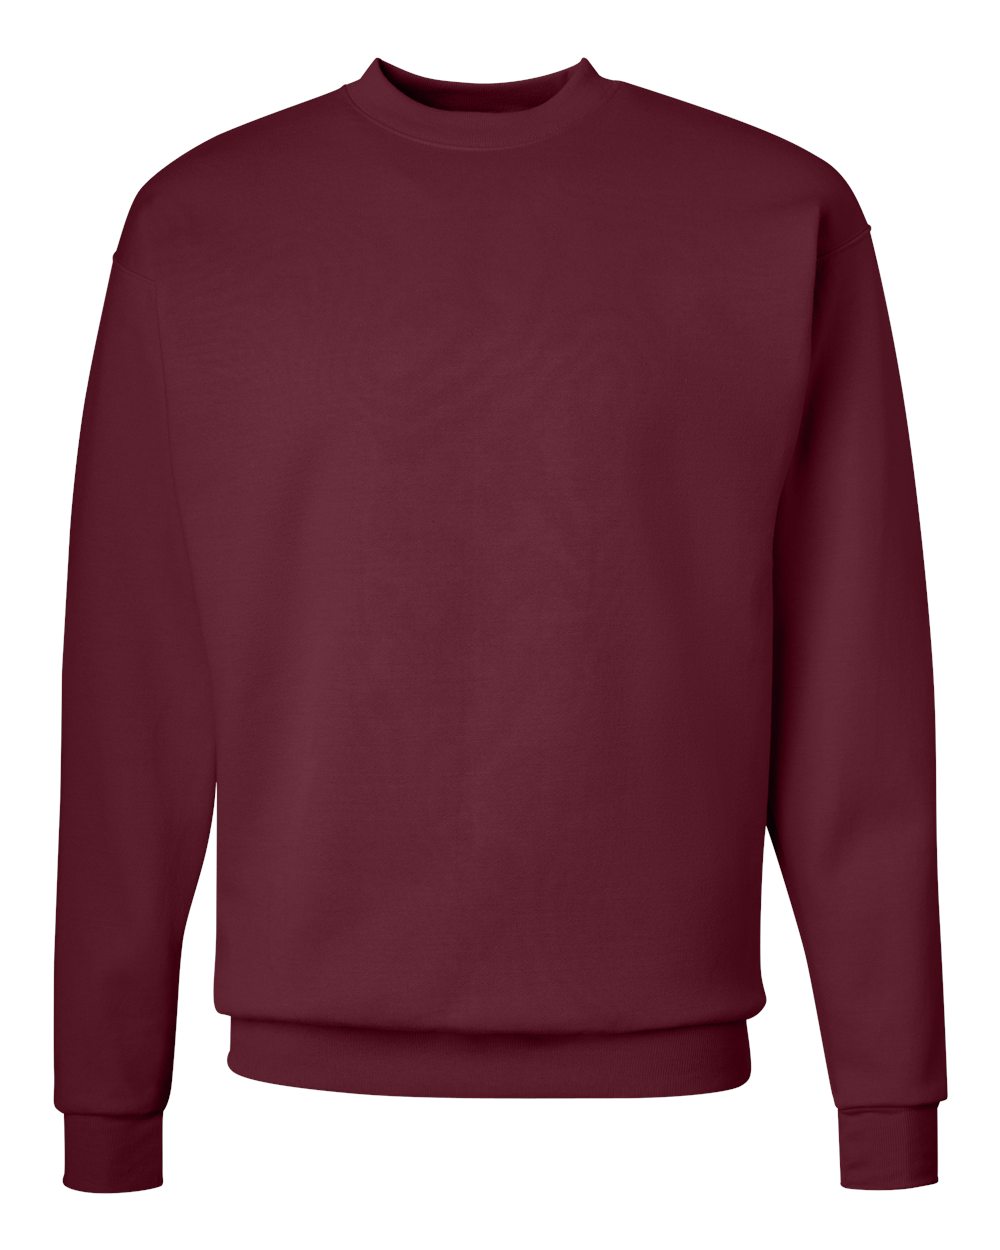 Hanes Men's Ecosmart Crewneck Sweatshirt